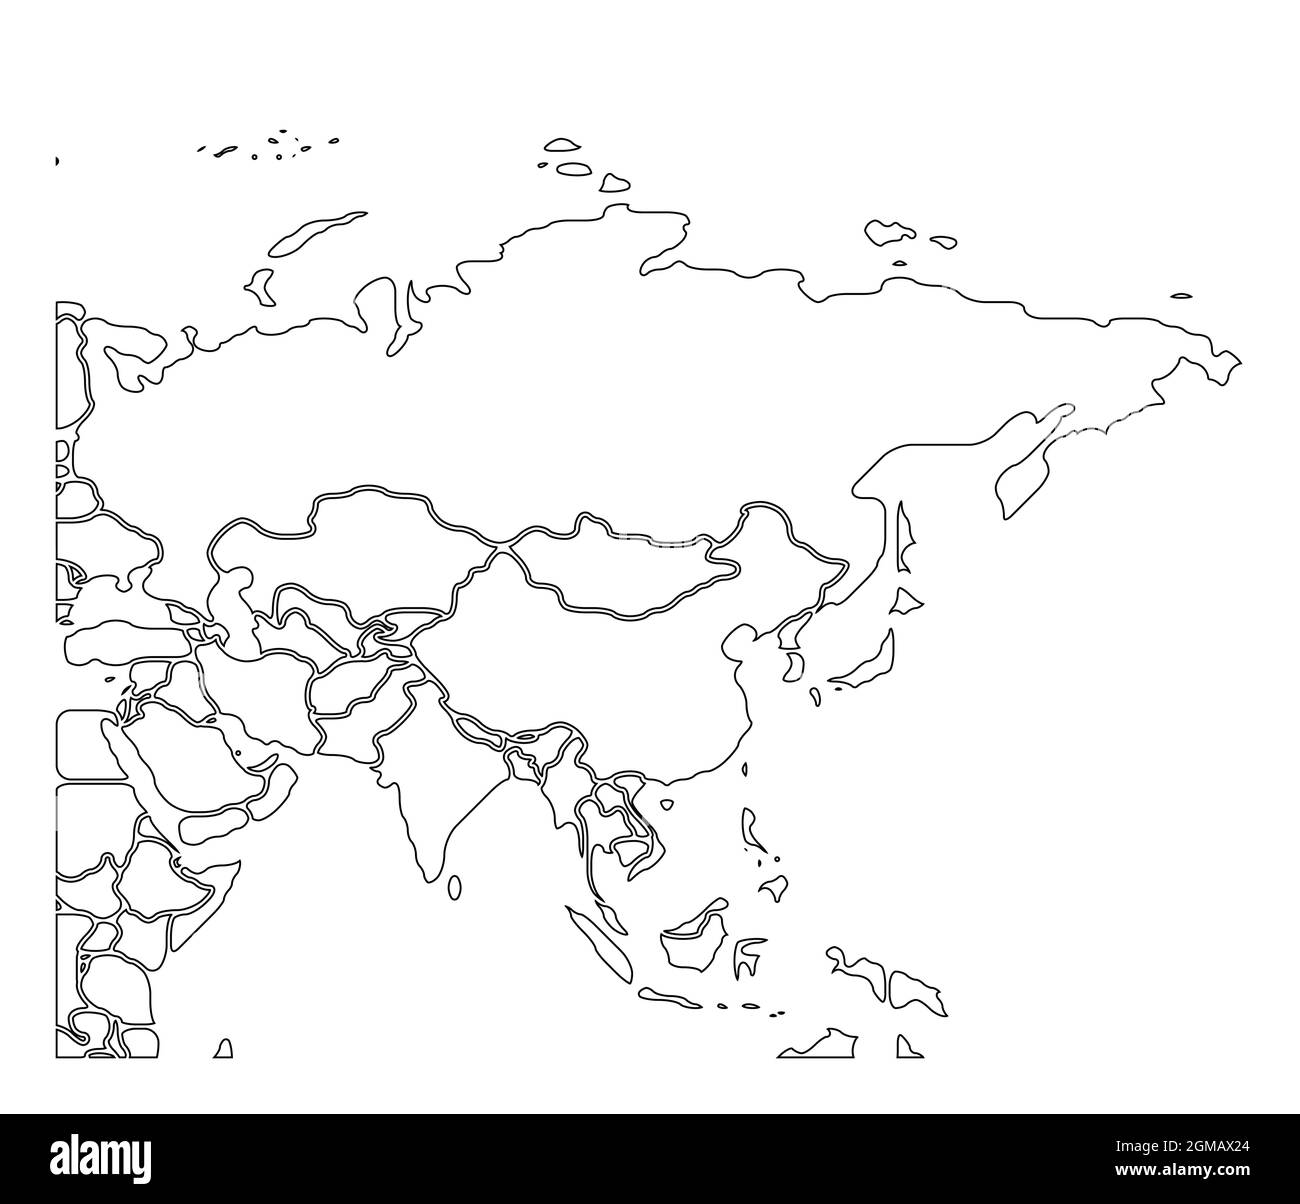 Mappa schematica semplificata dell'Asia. Carta politica dei paesi del continente vuoto e isolato. Bordi generalizzati e smussati. Semplice illustrazione vettoriale piatta Illustrazione Vettoriale